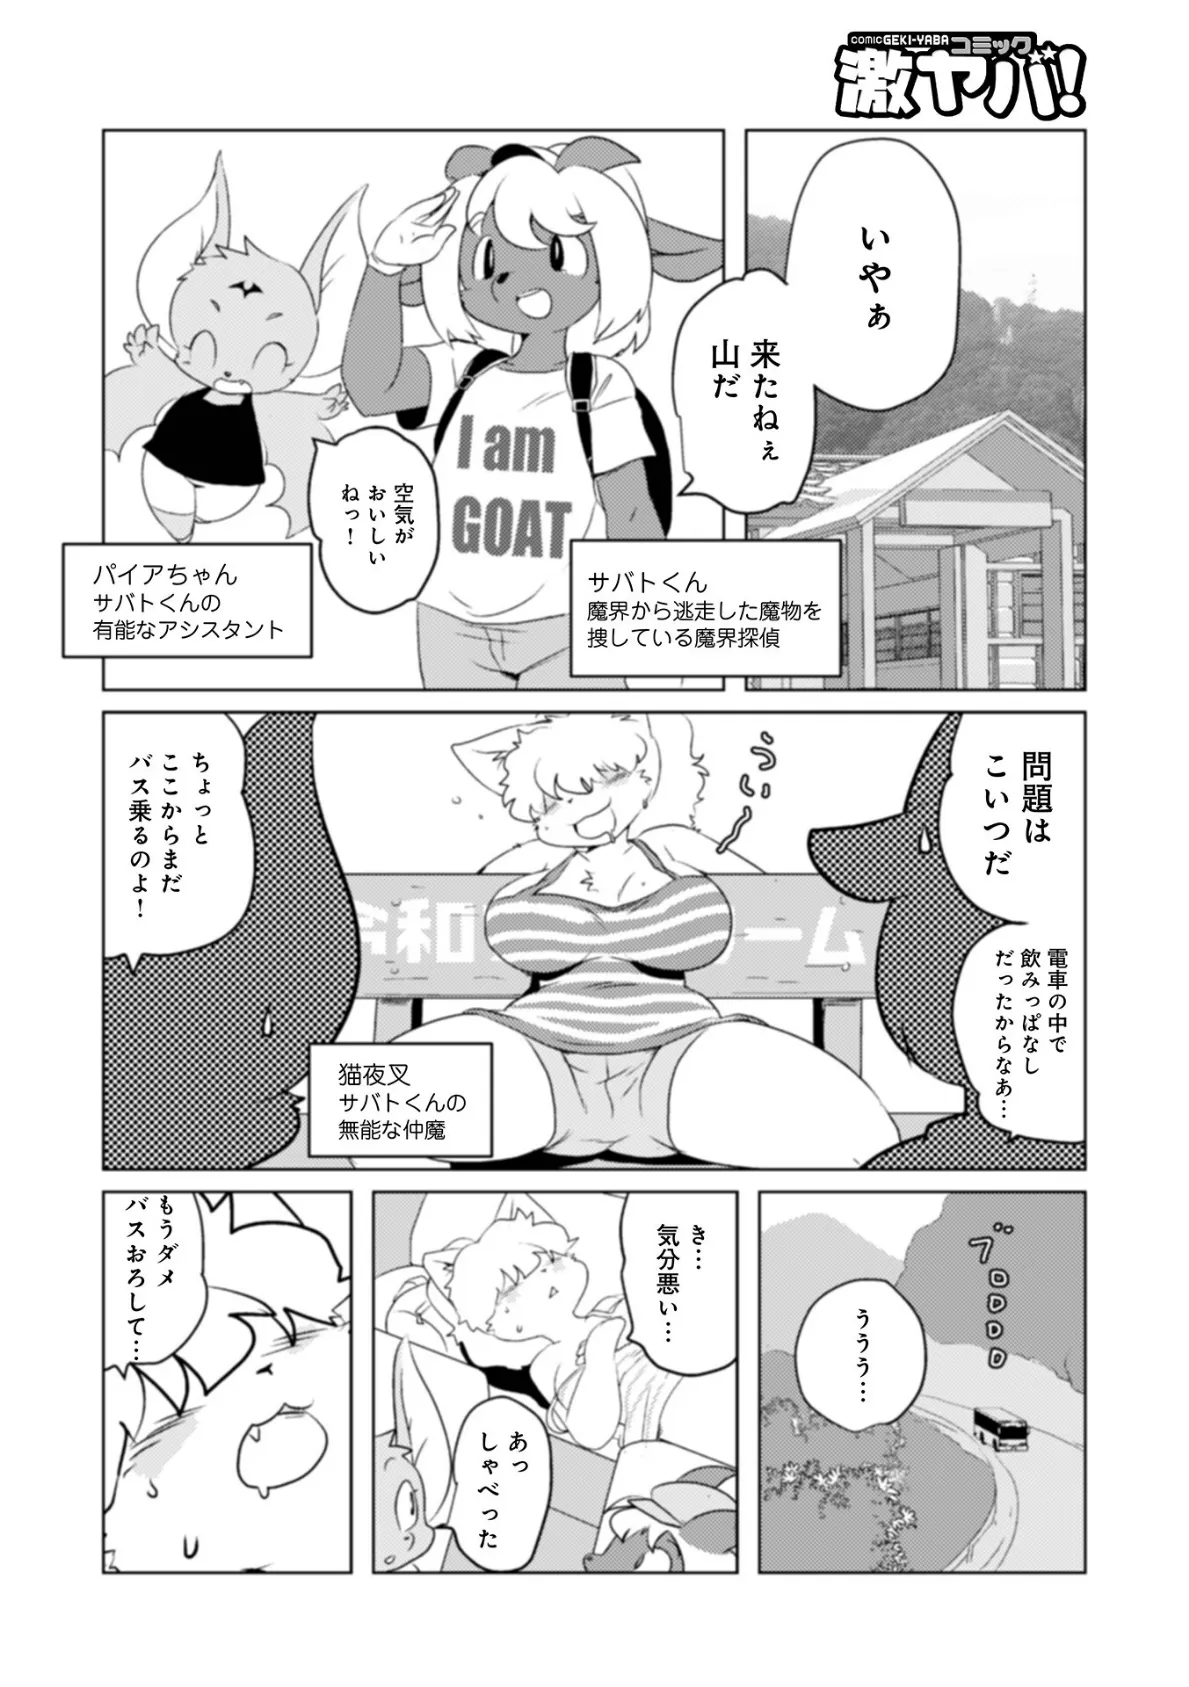 魔界探偵サバトくん第1巻 12ページ